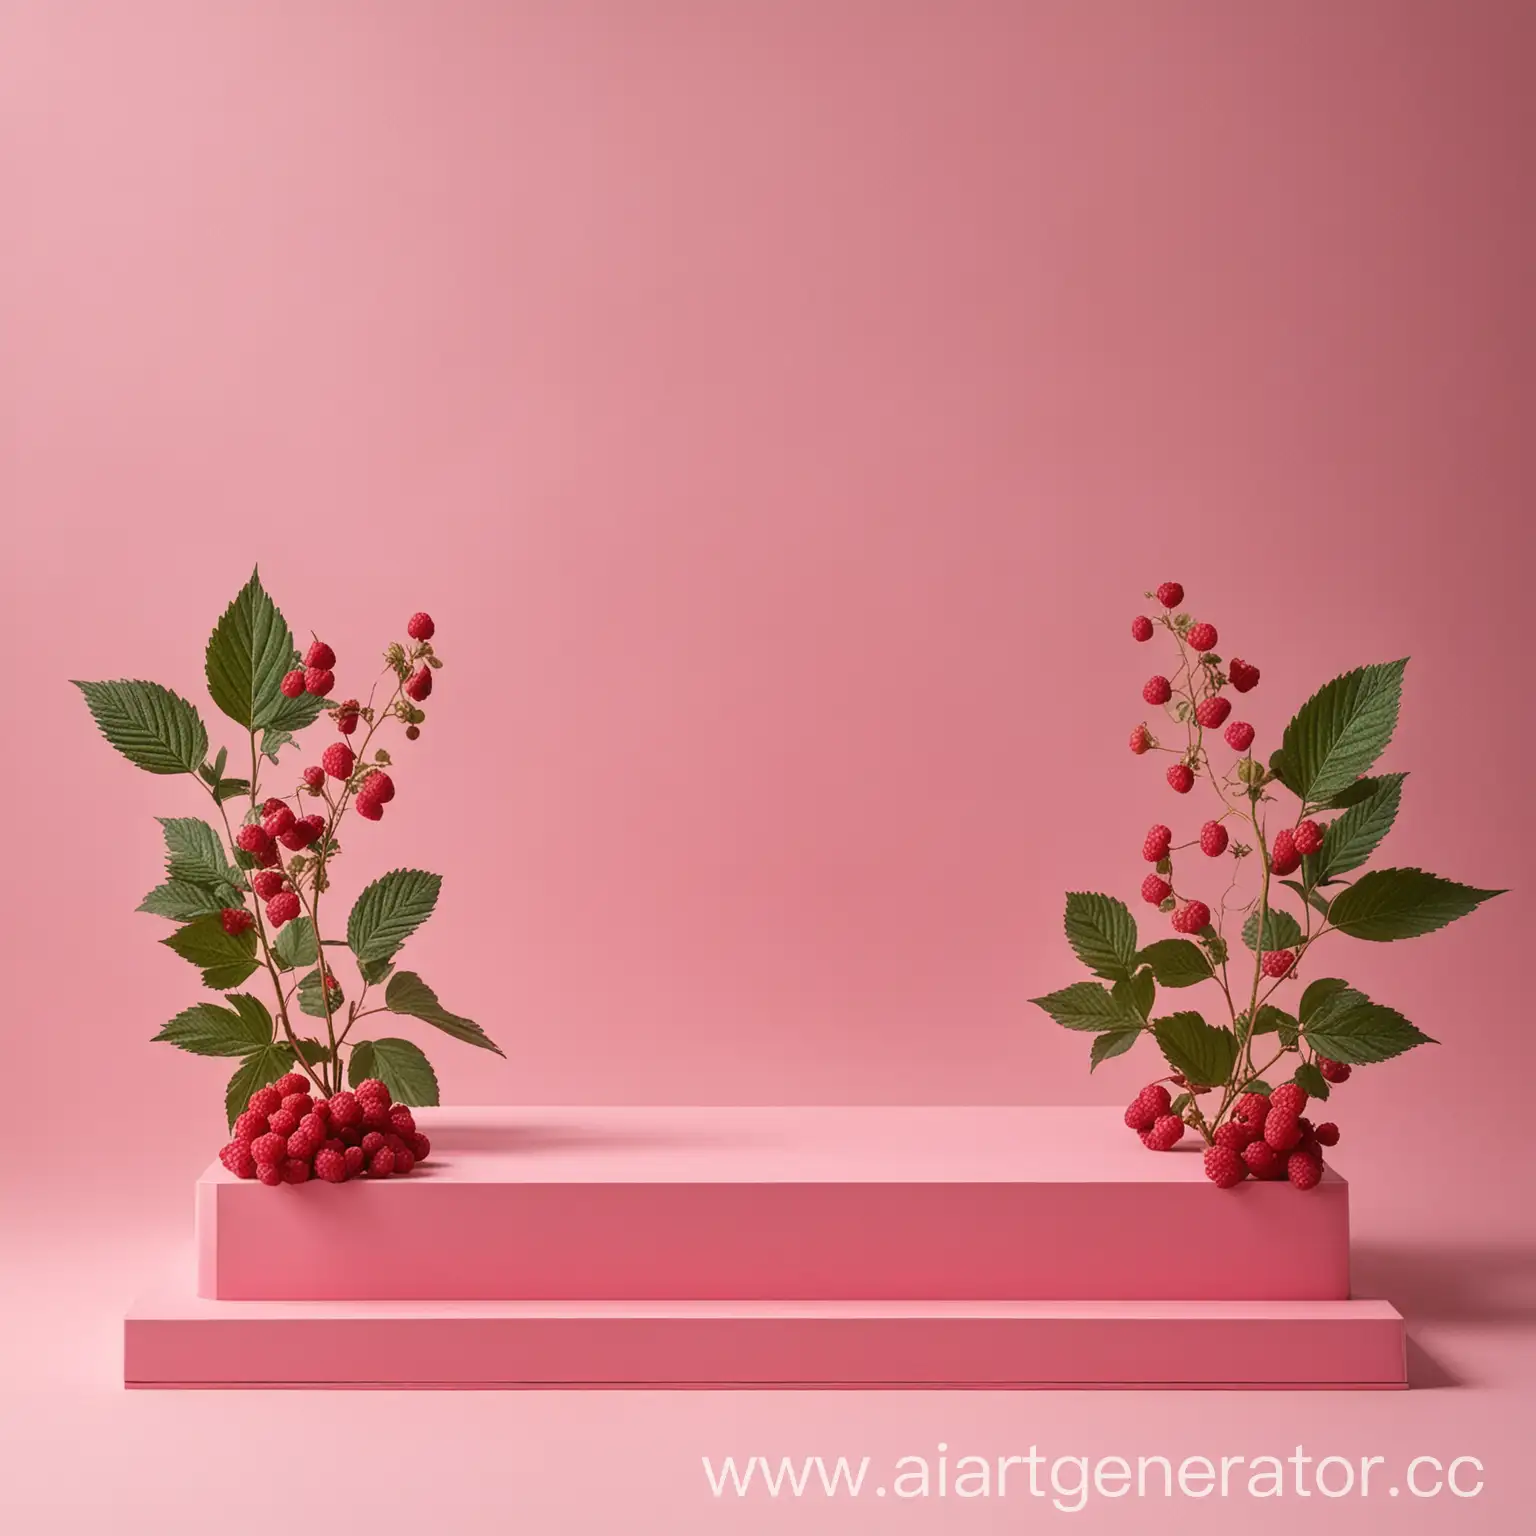 розовый подиум для товара вокруг подиума малина и листья